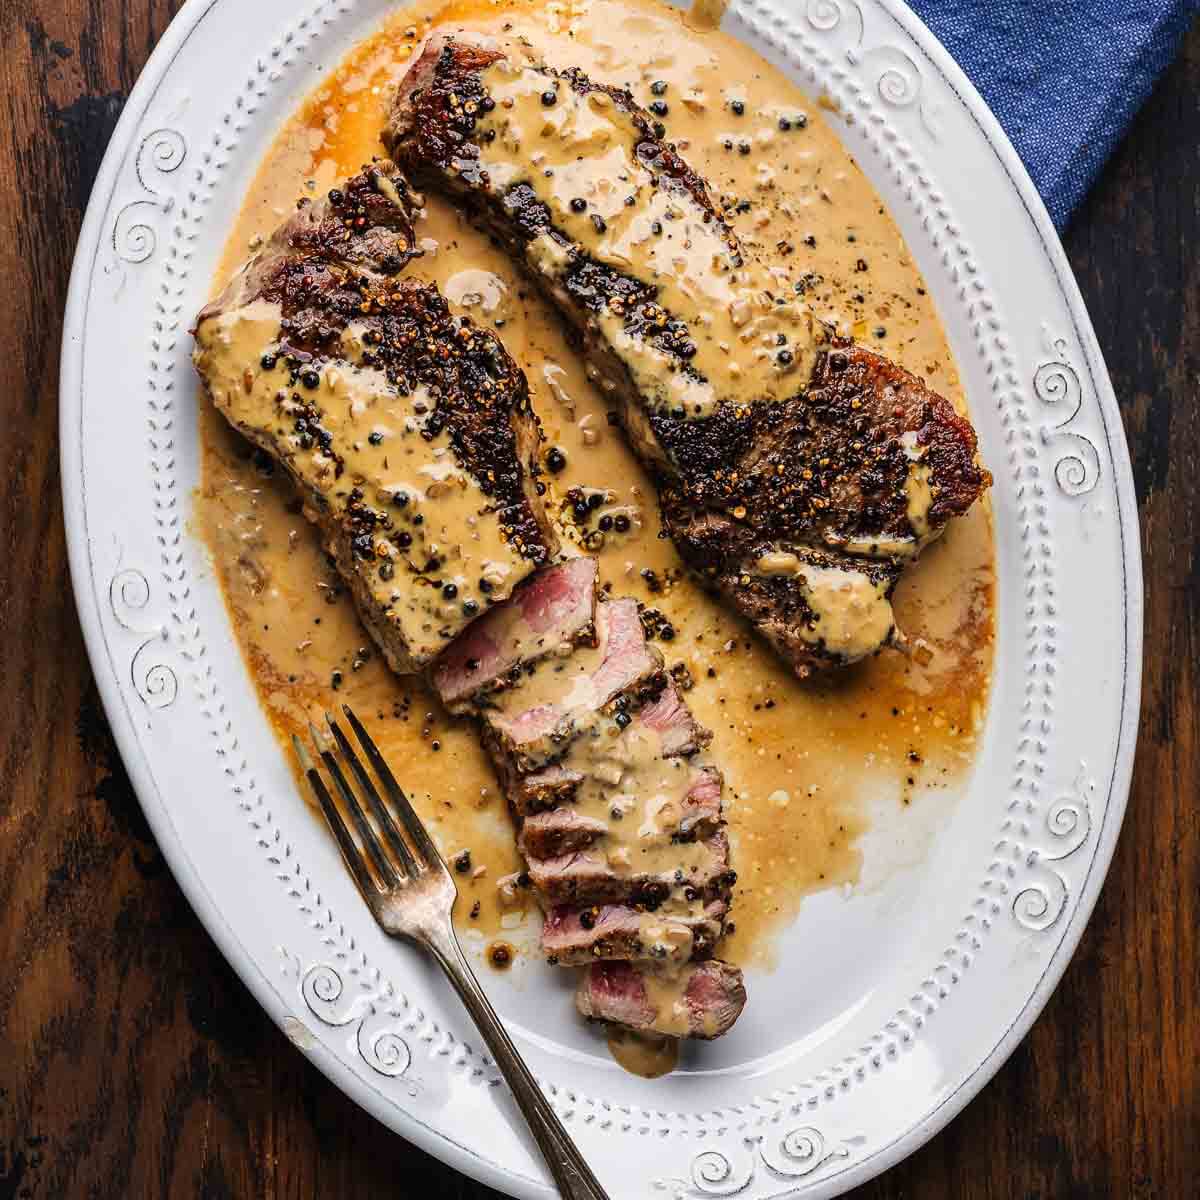 Steak au poivre in white platter on table.